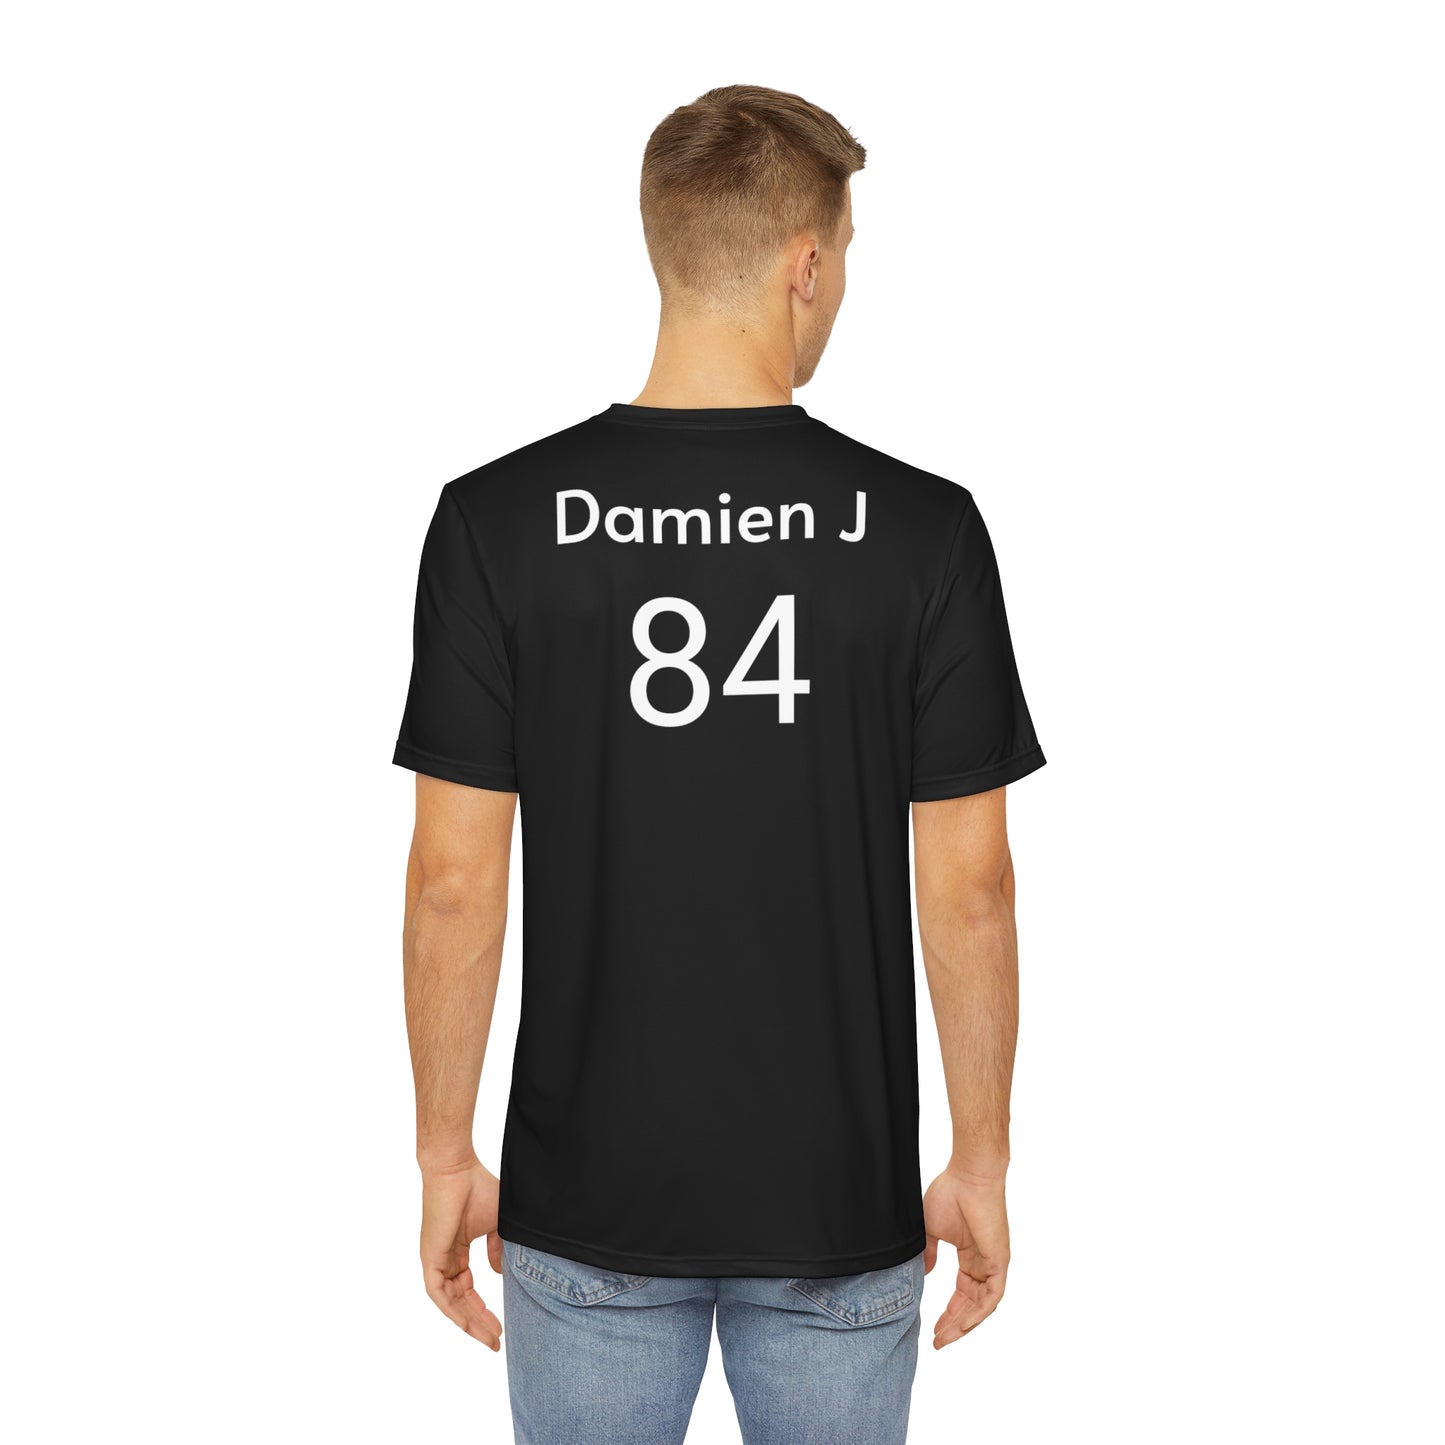 Damien J Team Tshirt